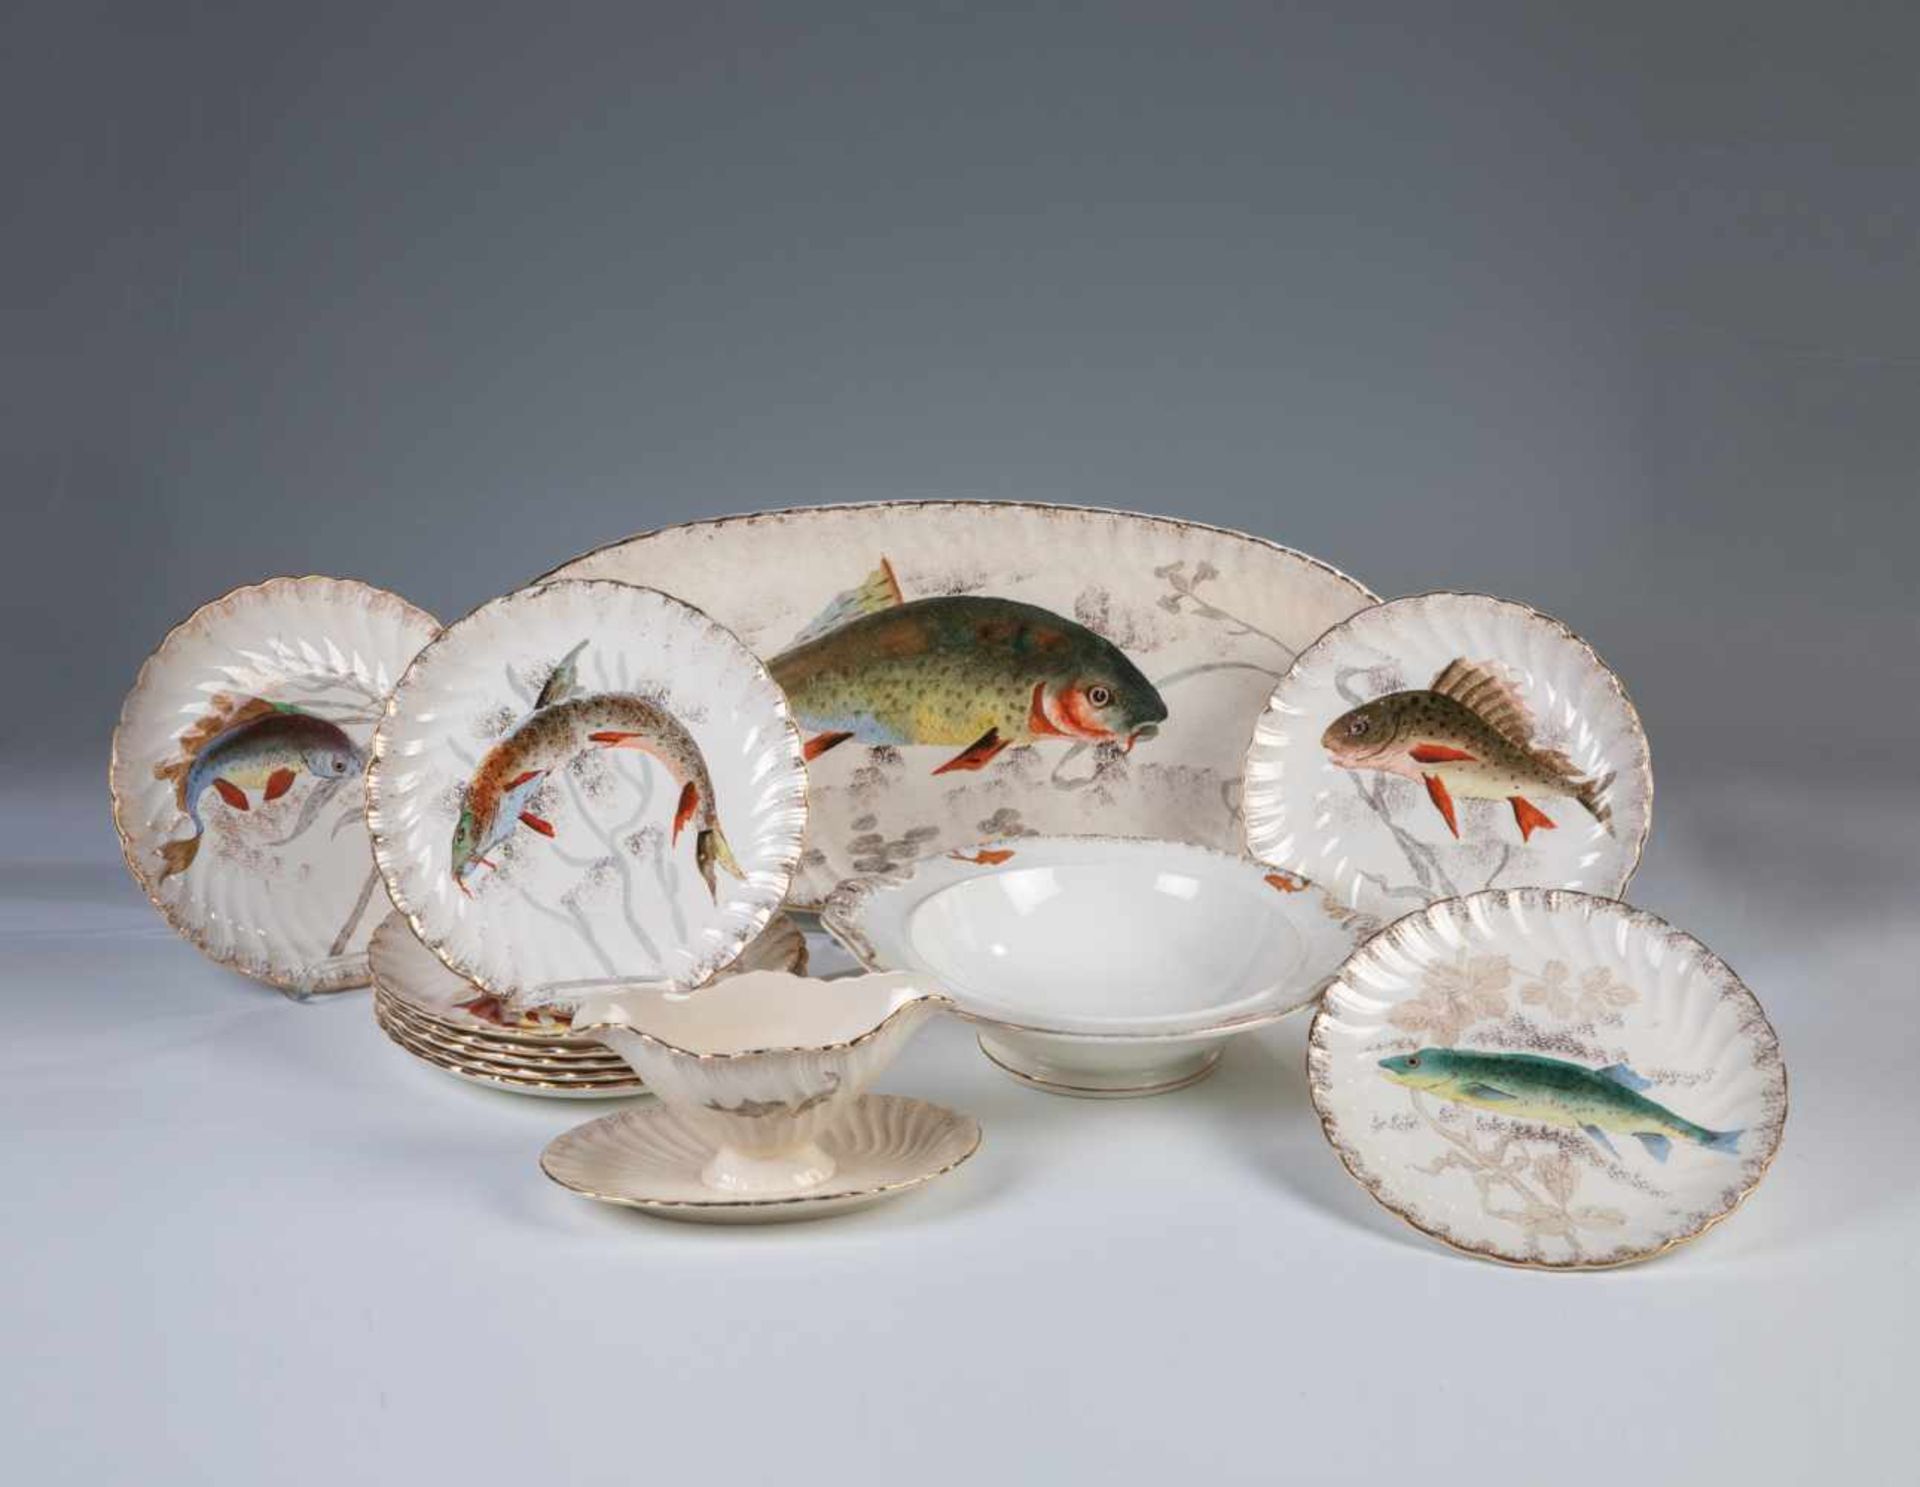 FischserviceFranz Anton Mehlem, um 1900 Glasierte Keramik mit verschiedenen Fischdekoren in bunter